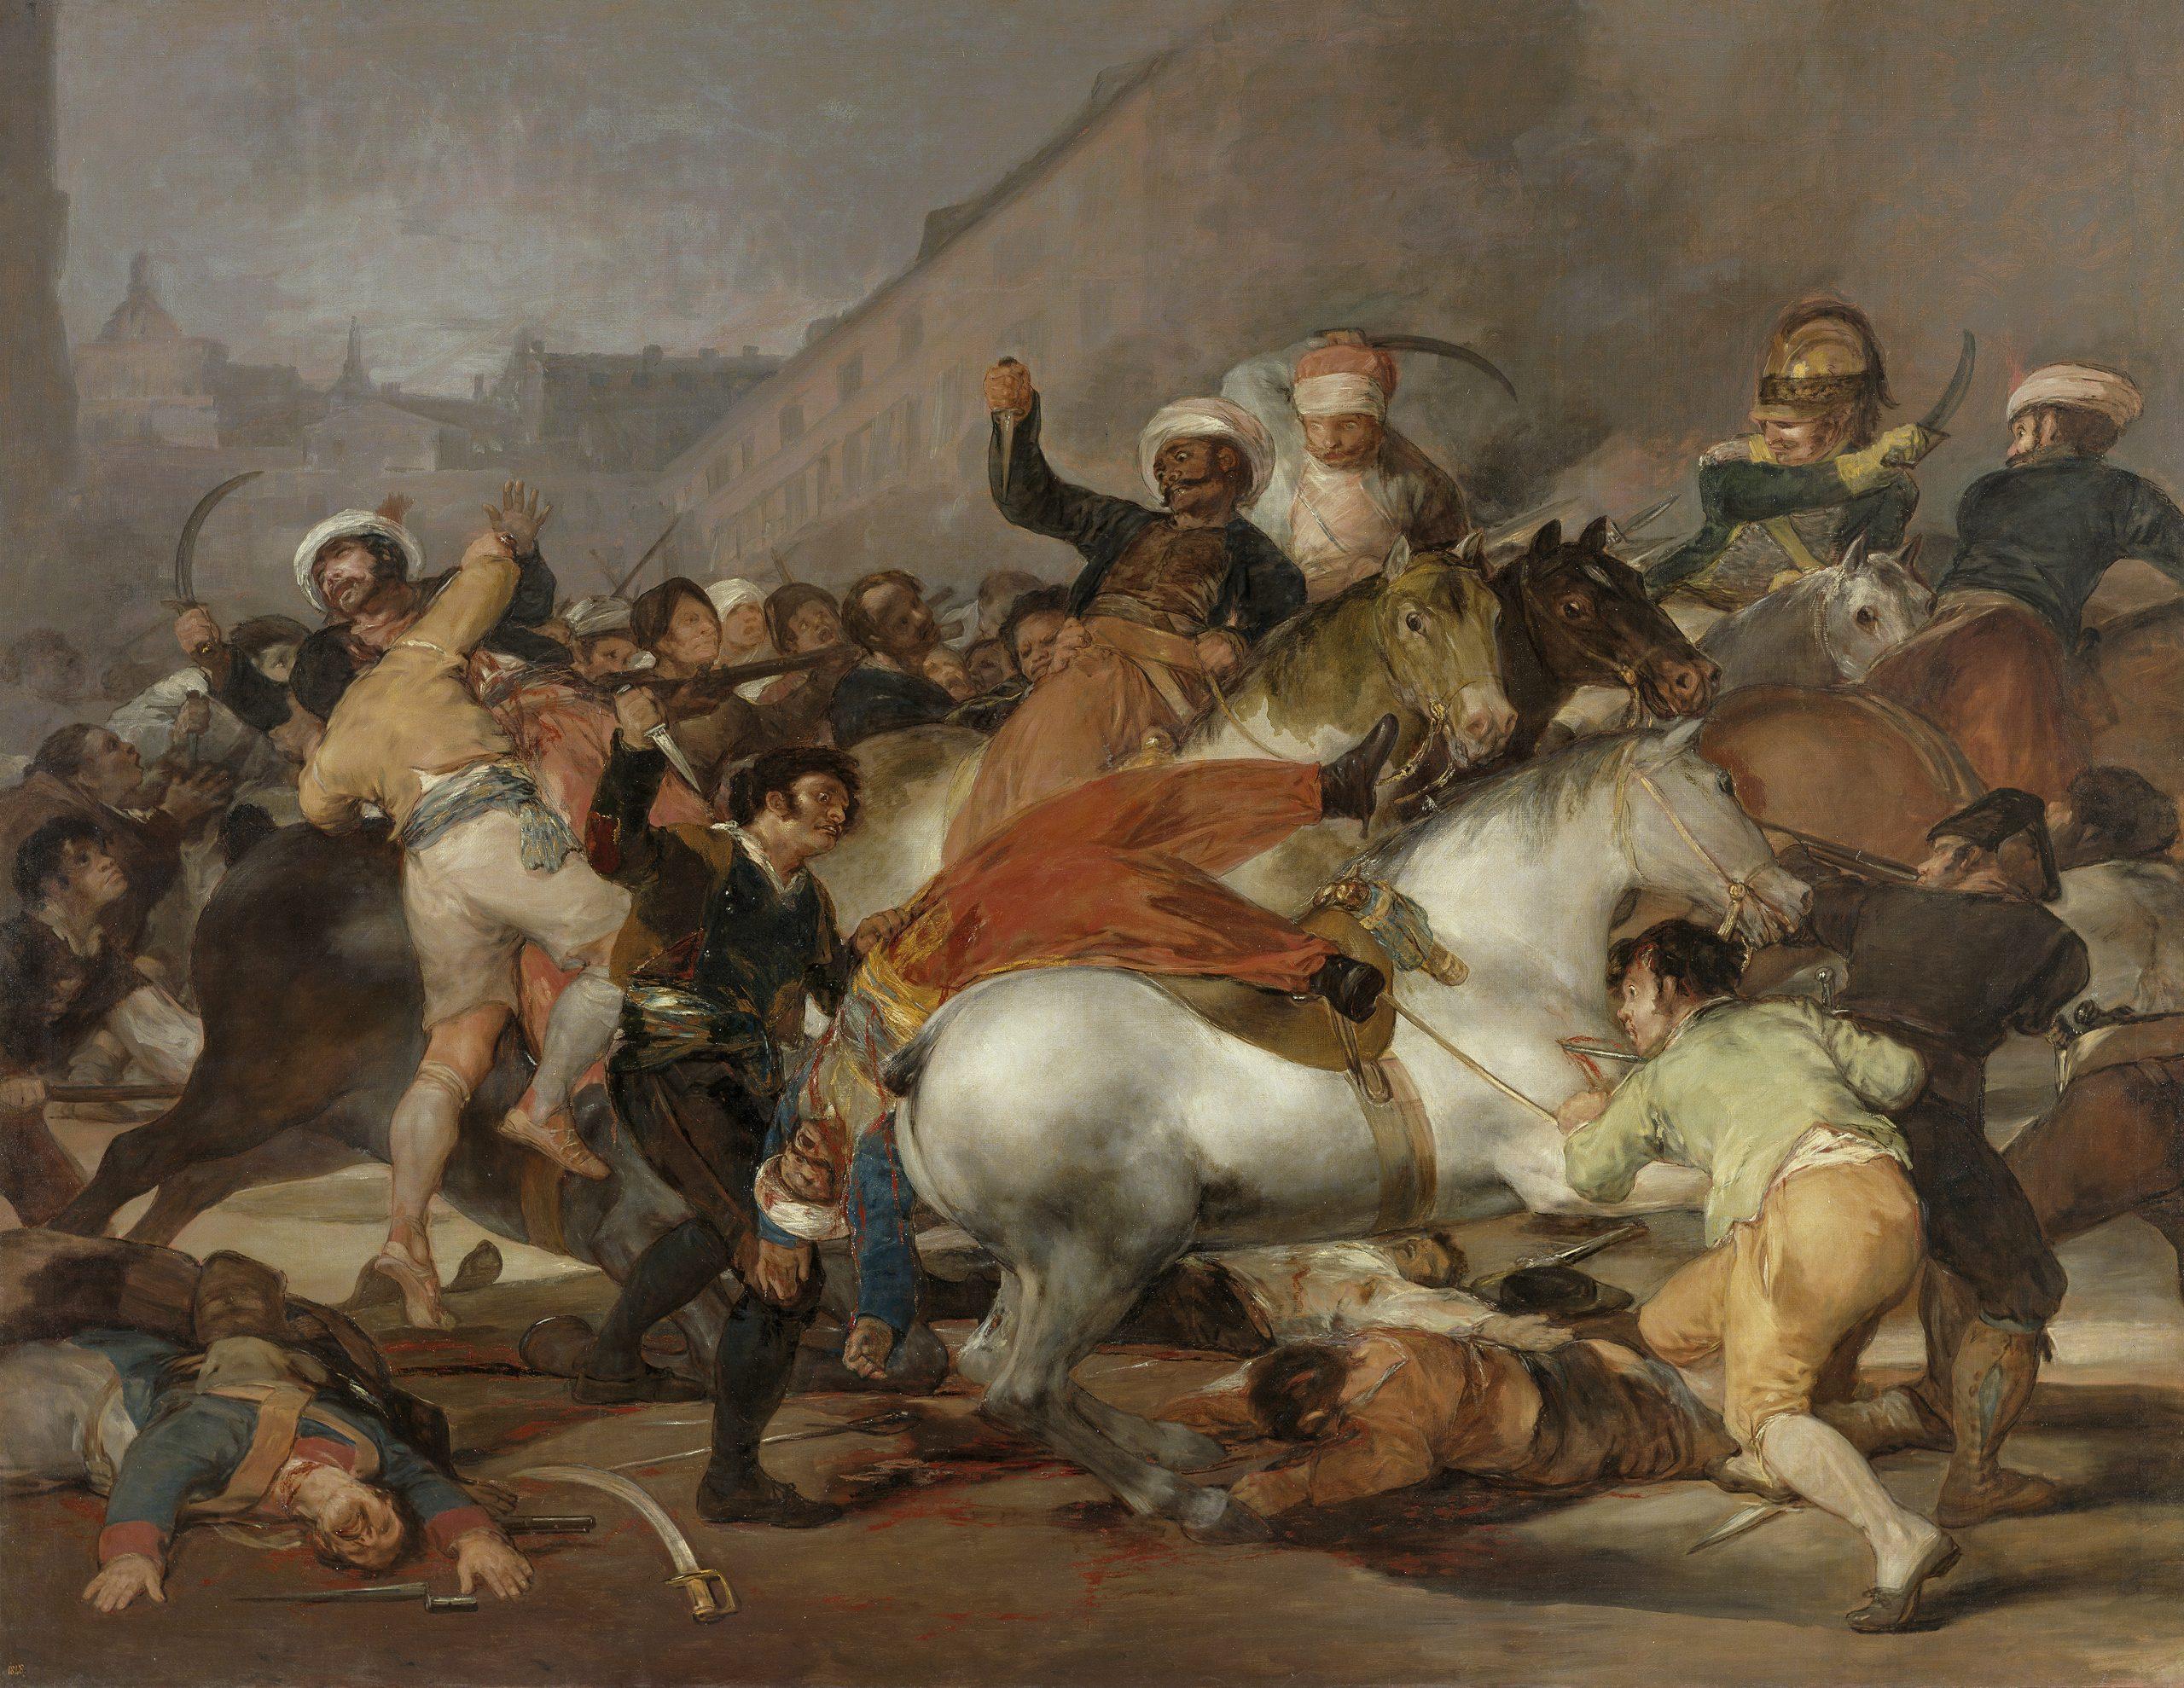 Pintura ‘El dos de mayo de 1808 en Madrid, de Goya, sobre la Guerra de la Independencia.